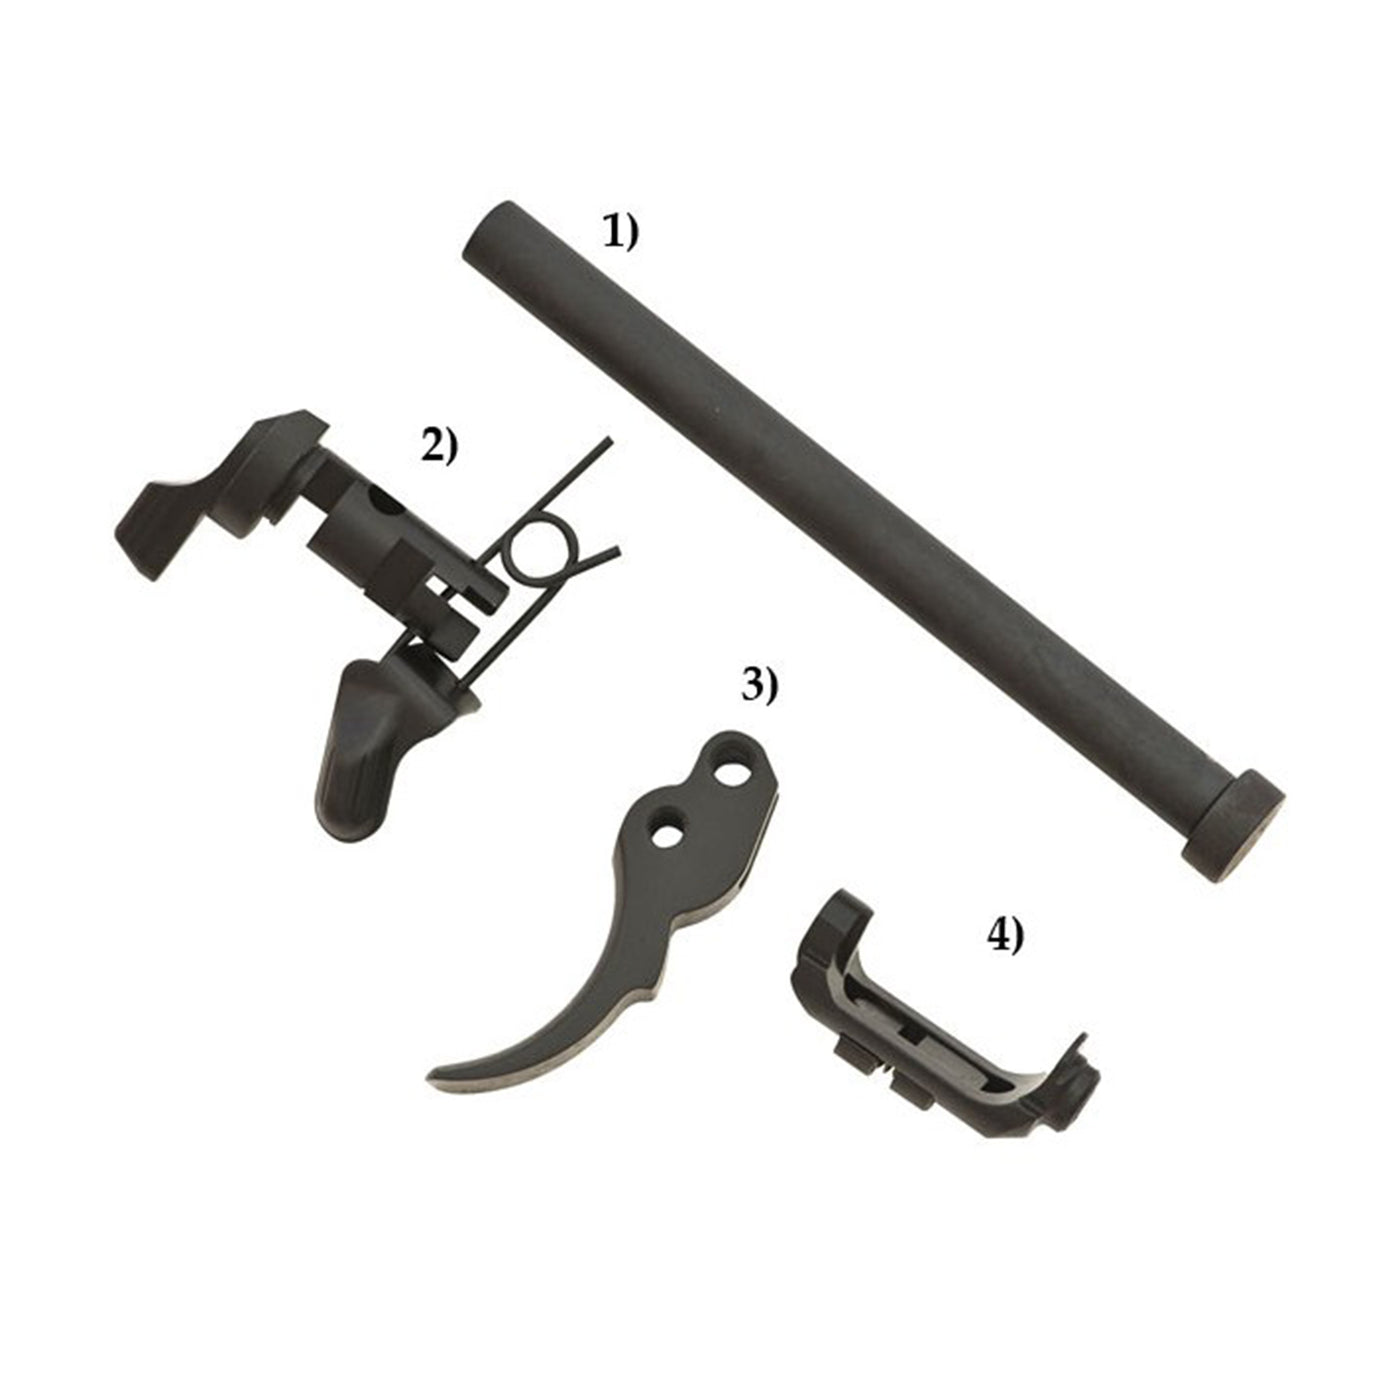 92/92 Steel Parts Trigger Plus